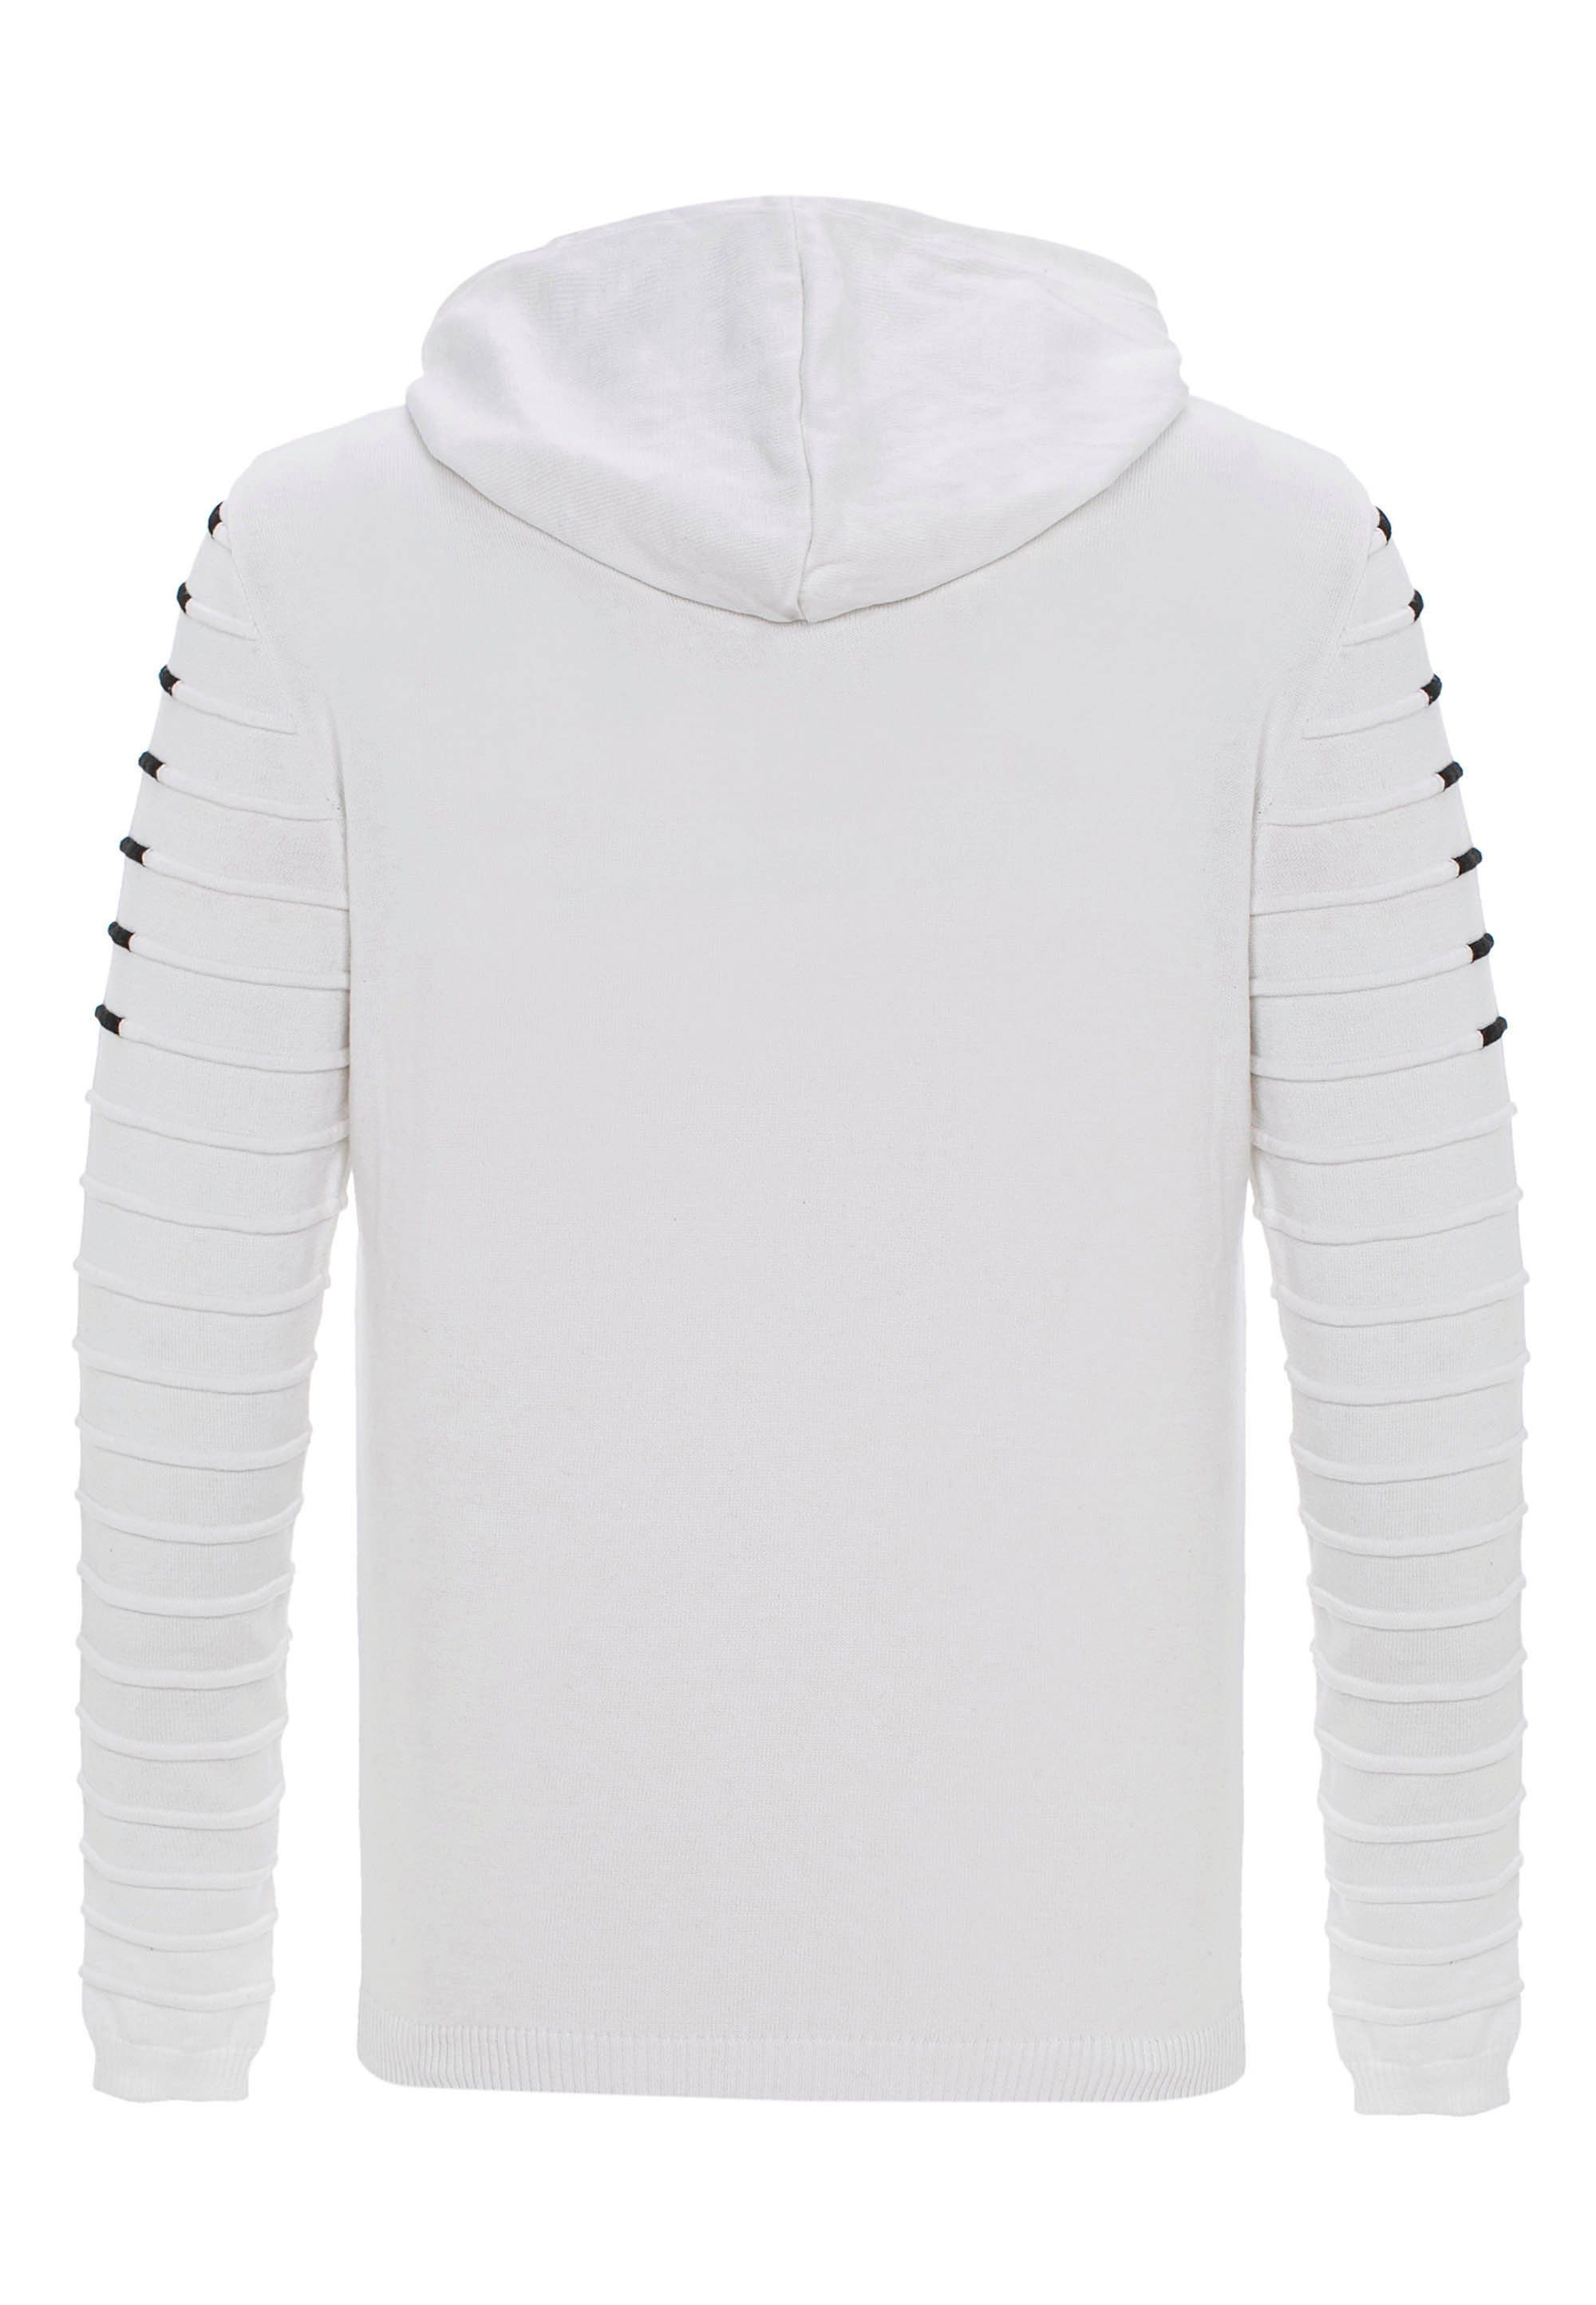 Cipo & Baxx Kapuzensweatshirt mit Kapuze weiß kuscheliger